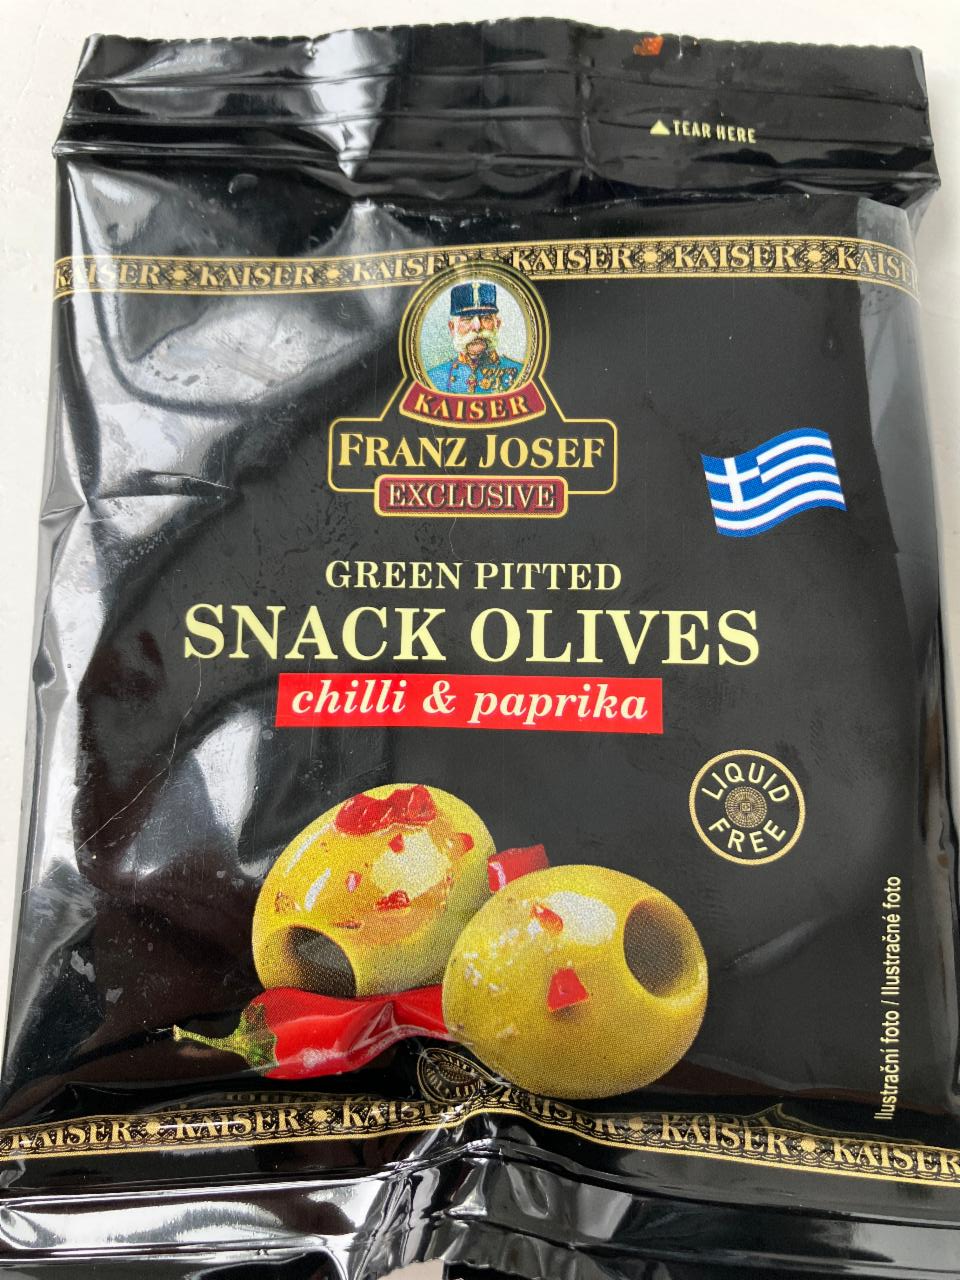 Fotografie - Snack Olives Green pitted Chilli & paprika Kaiser Franz Josef